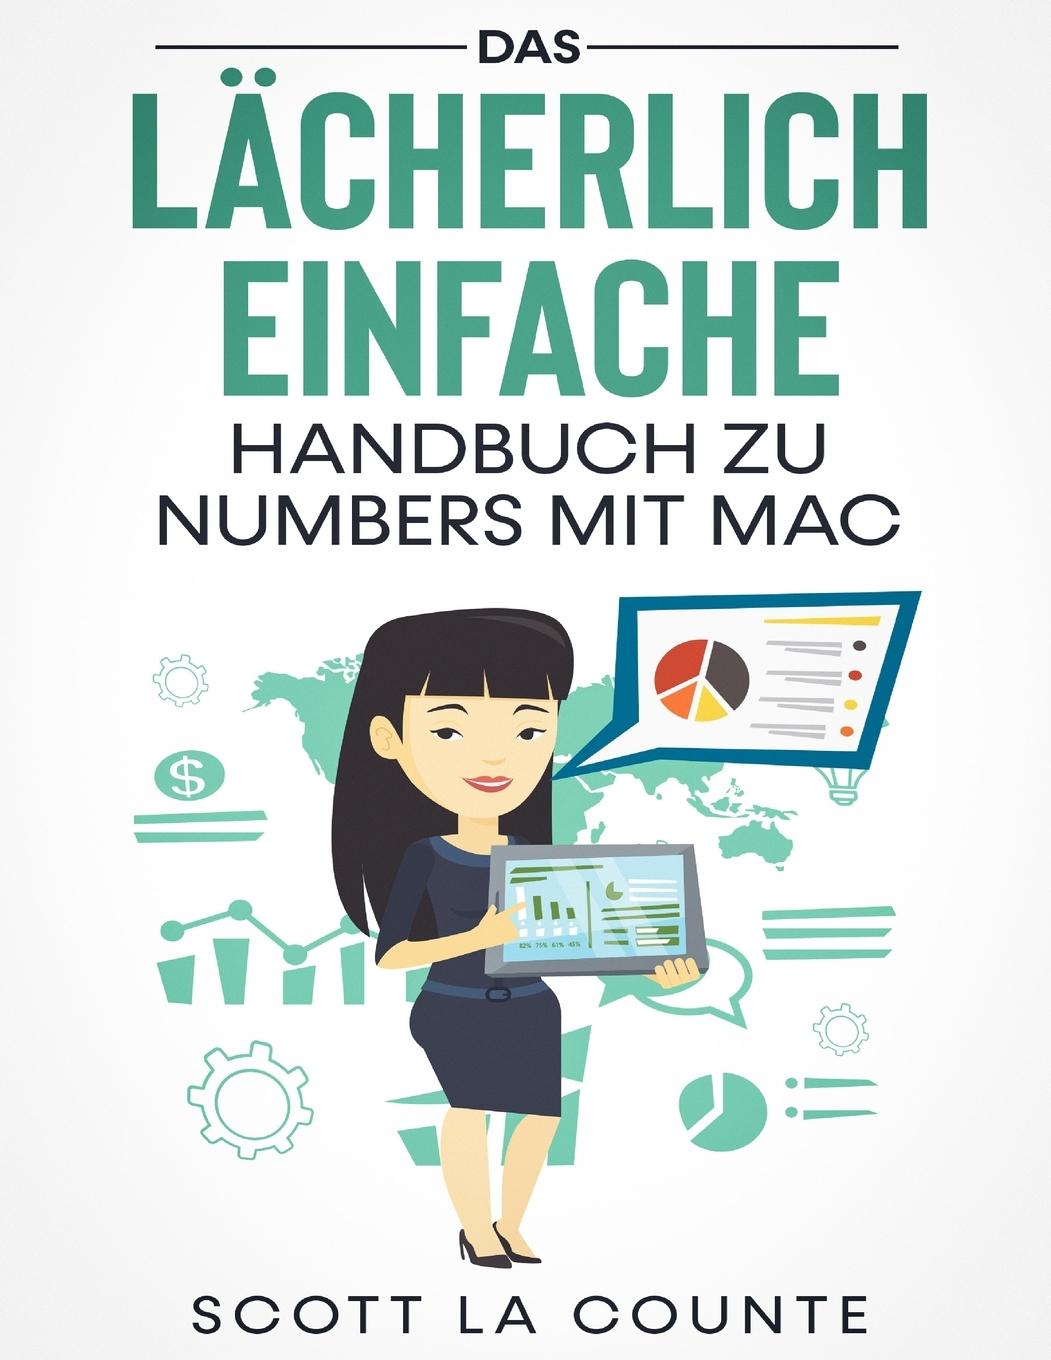 Kniha Lacherlich Einfache Handbuch zu Numbers mit Mac 